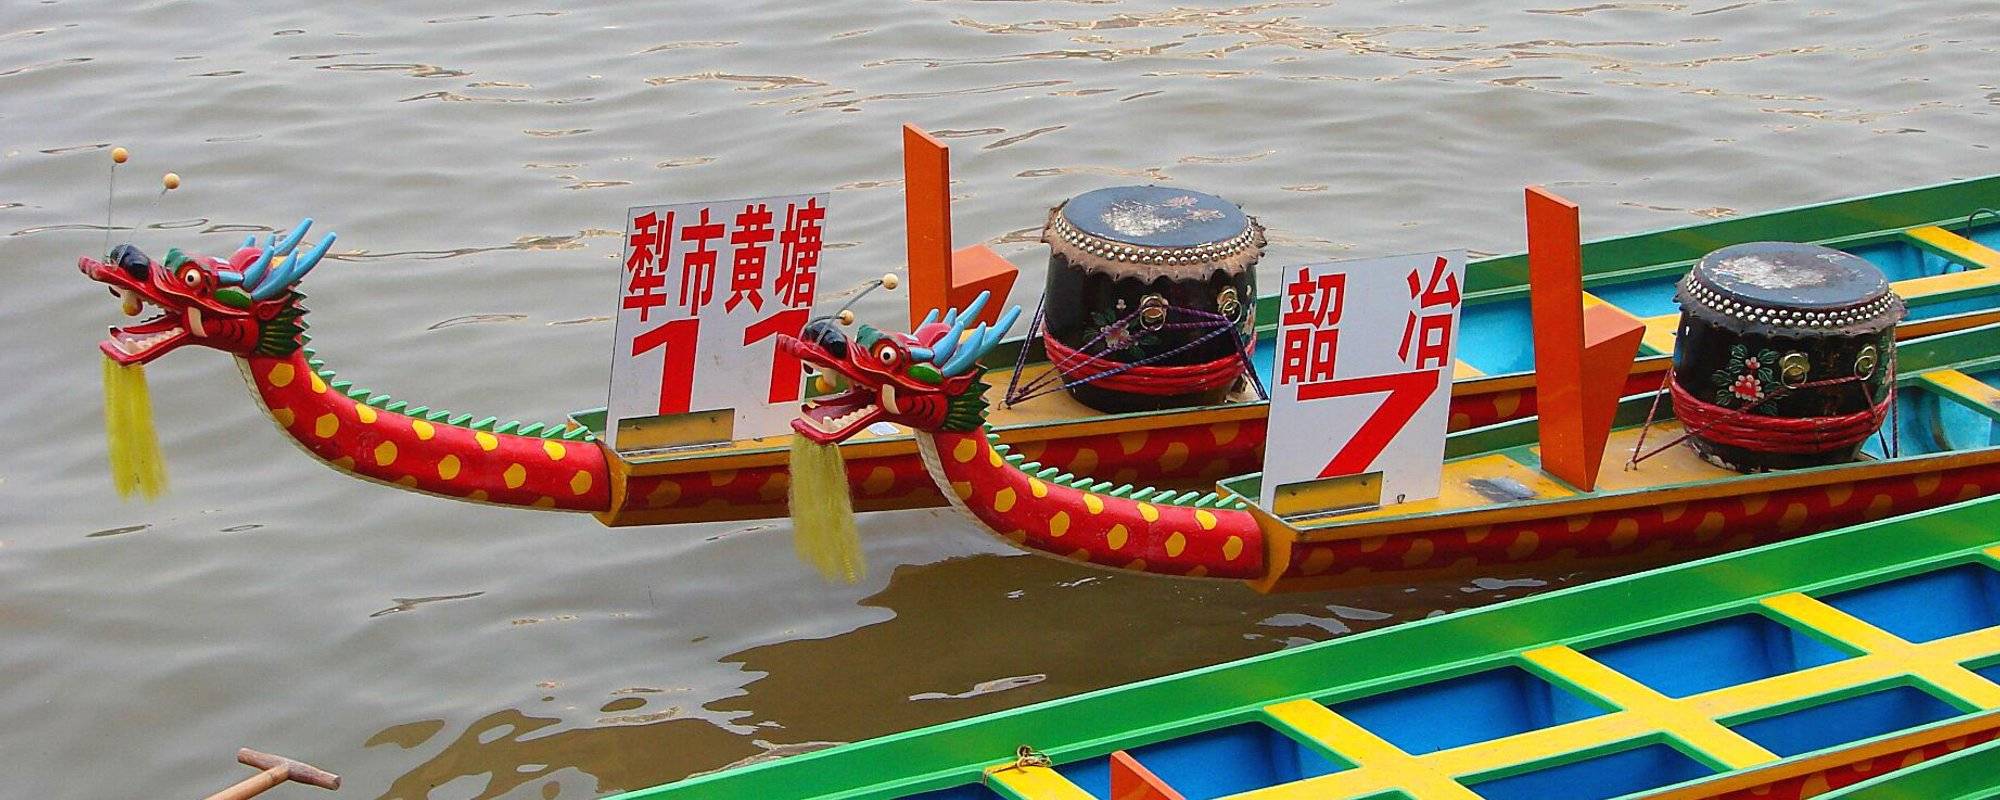 Shaoguan - Dragon boat race preparations / Vor dem Drachenbootrennen